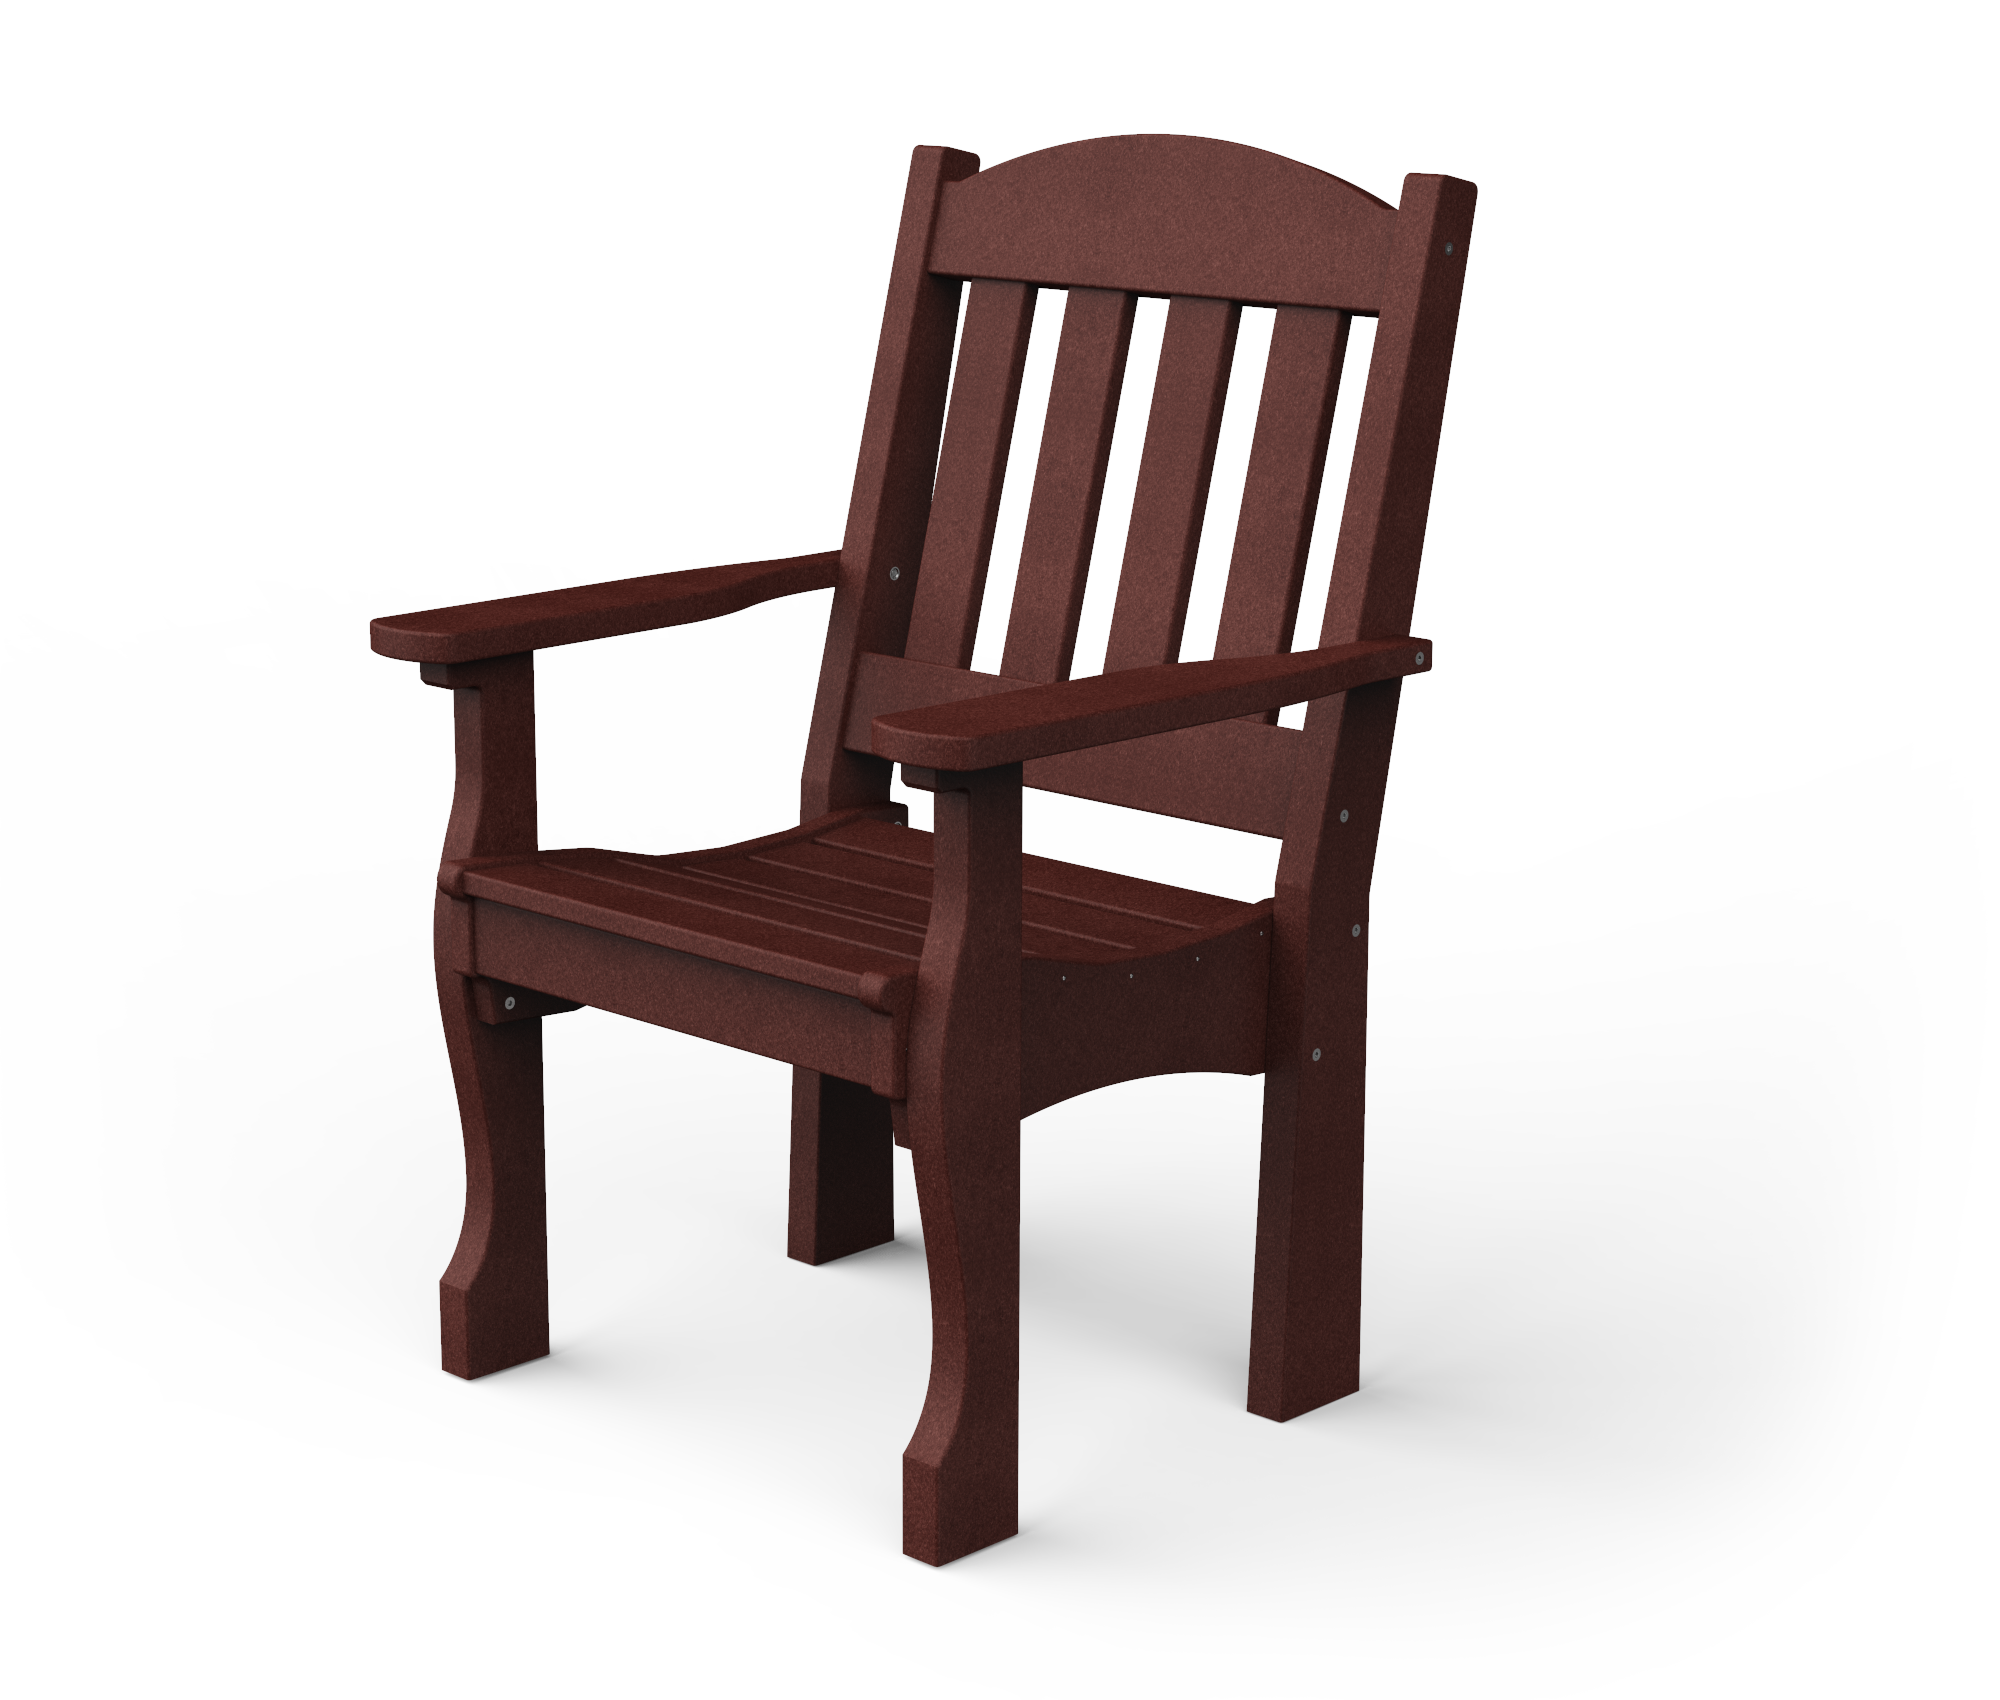 Poly garden arm chair.